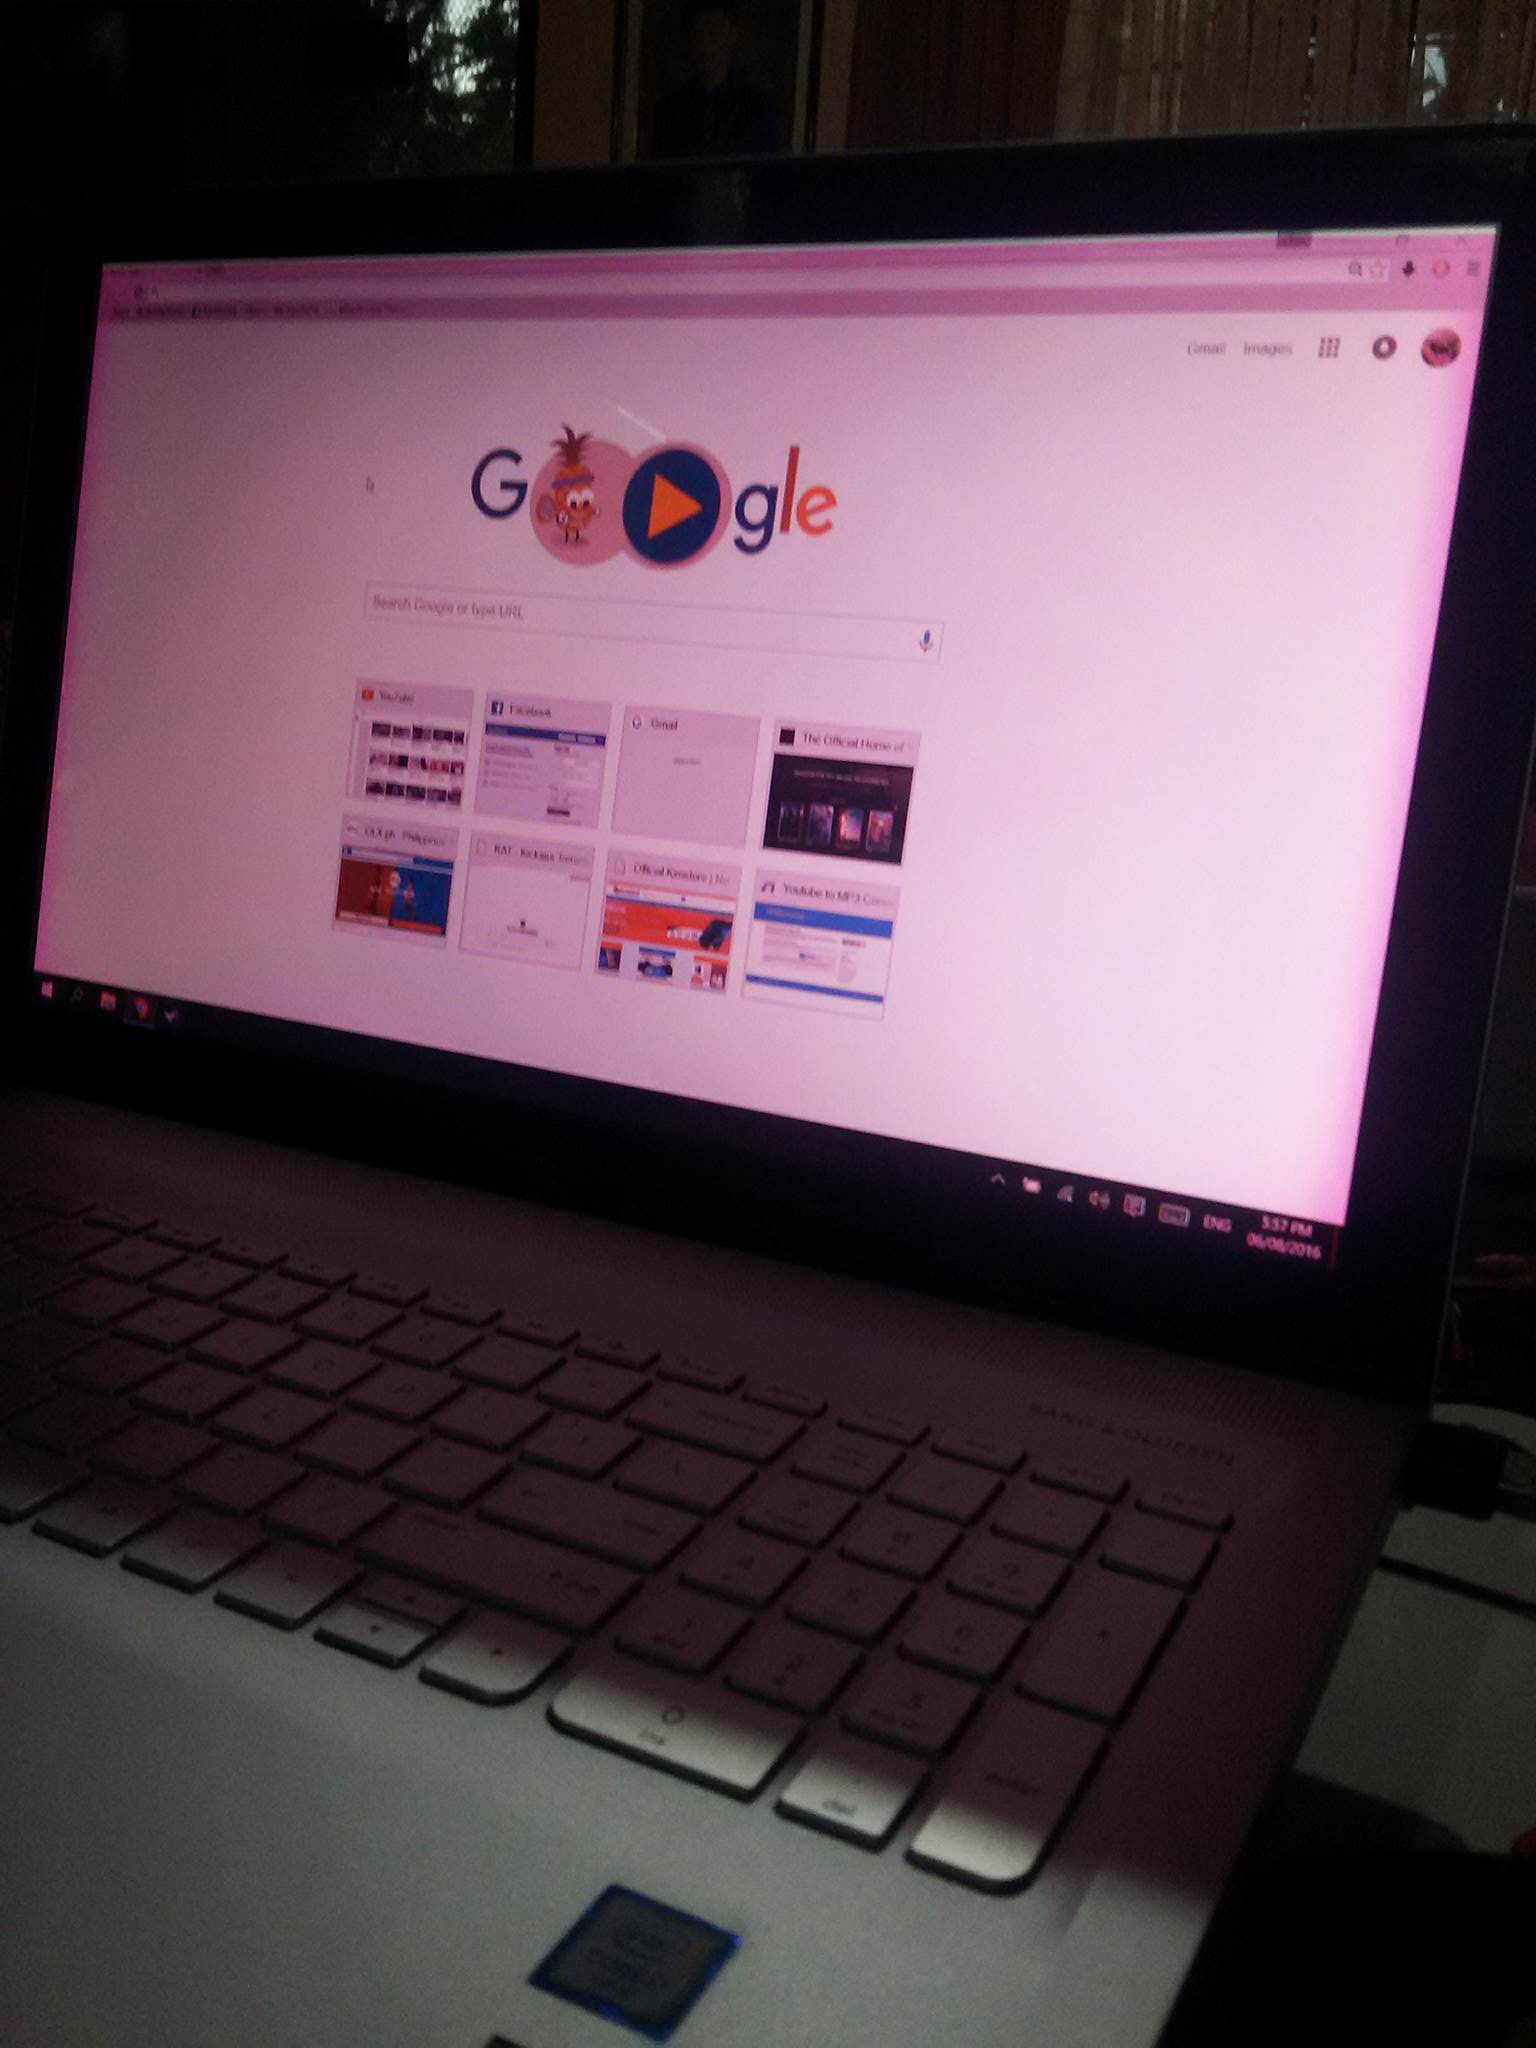 laptop screen turning pink